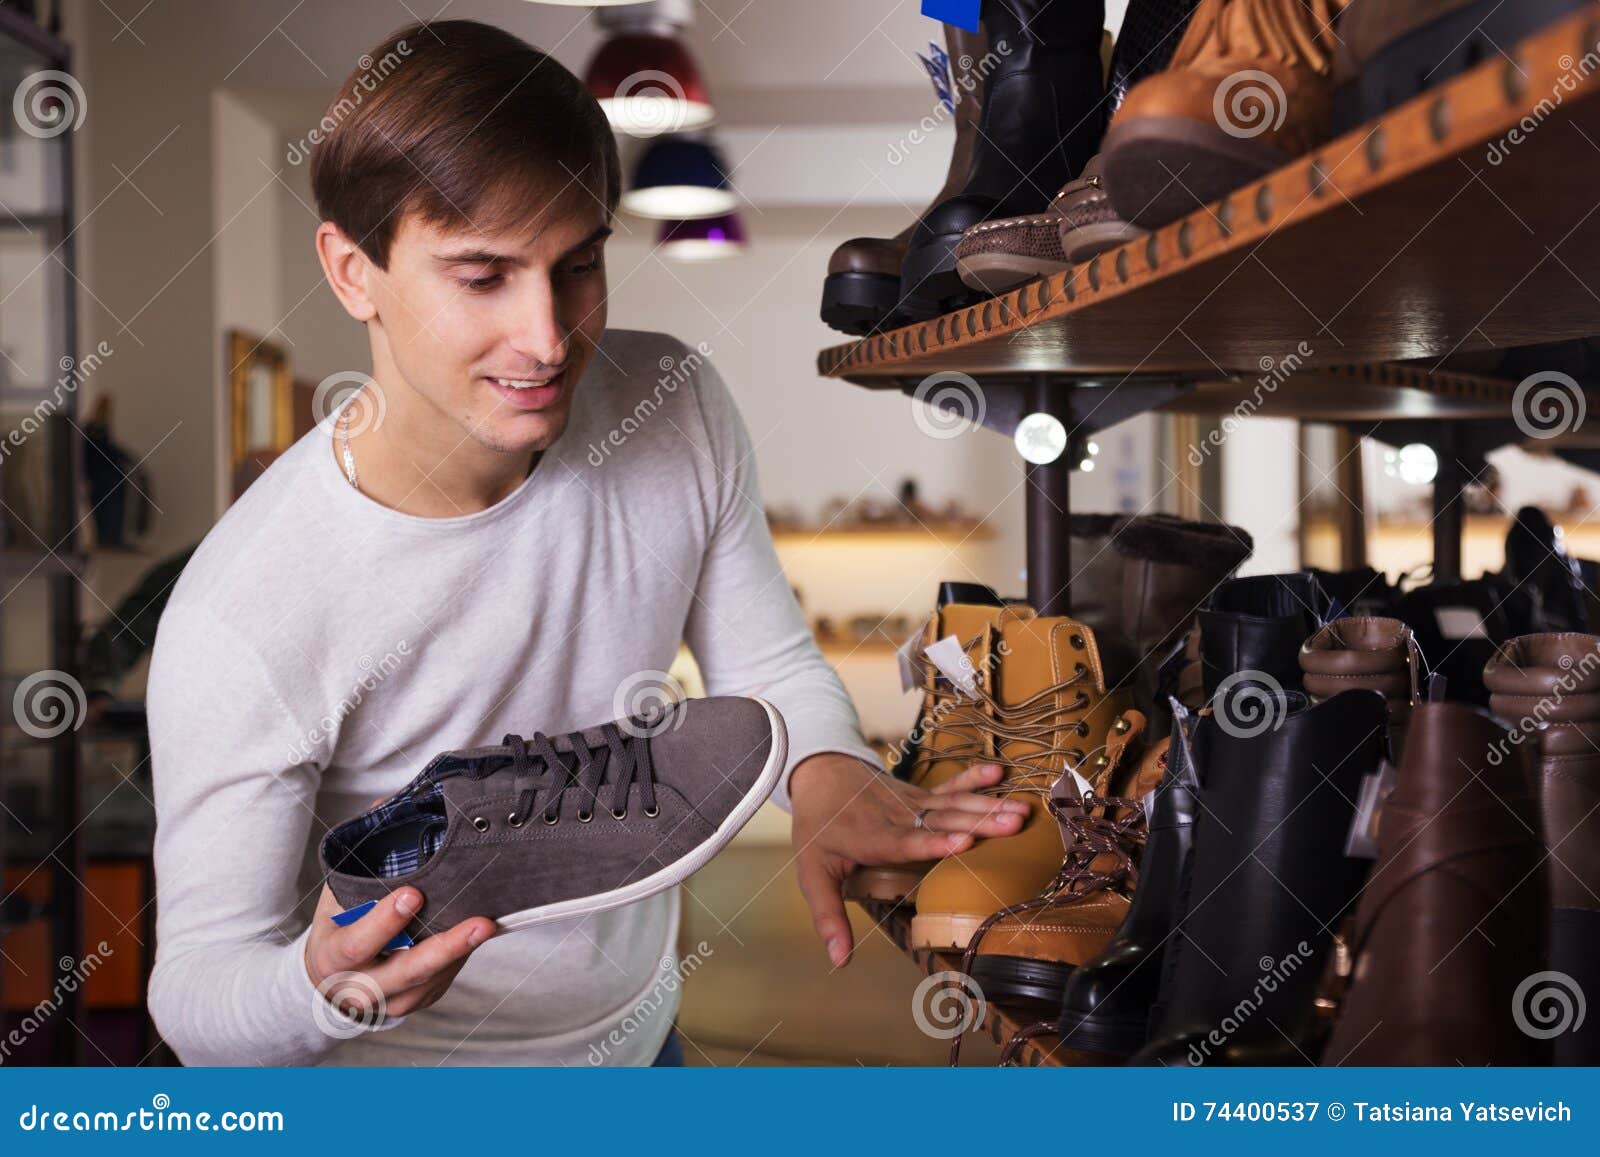 Мужчина выбирает обувь. Мужчина выбирает обувь в магазине. Cantwell’s Shoes шоппер. Человек подбирает обувь.